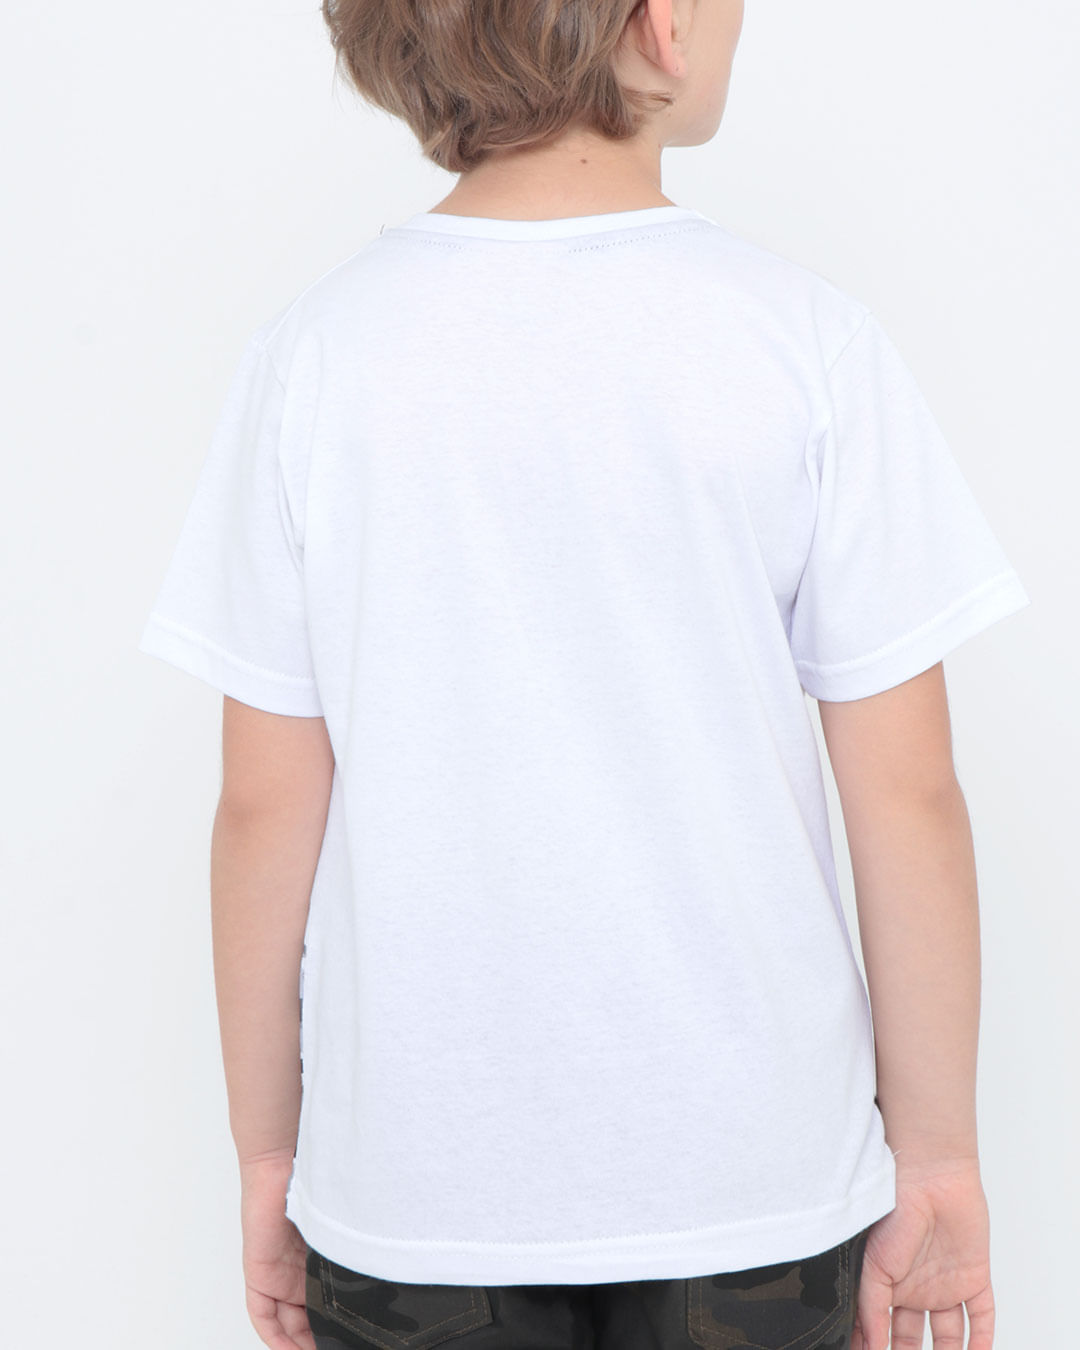 Camiseta-Infantil-estampa-Skate-Branca